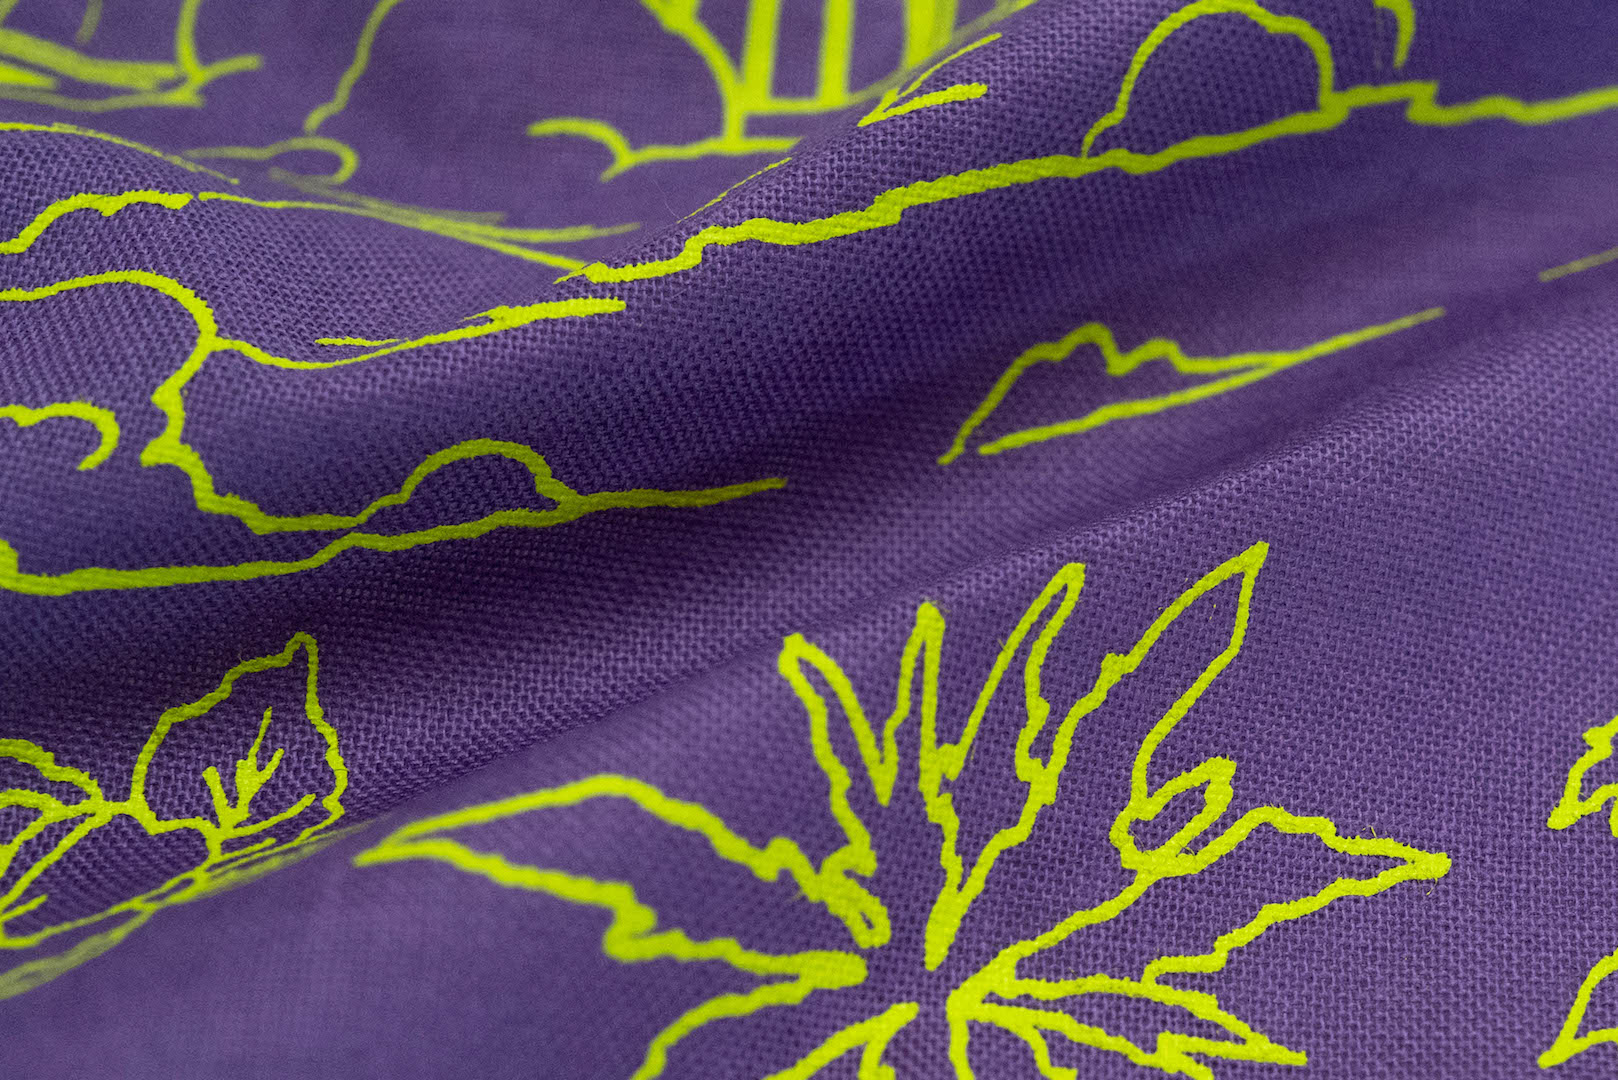 Unique Garment 'Have a Good Trip' Bandana (Purple)